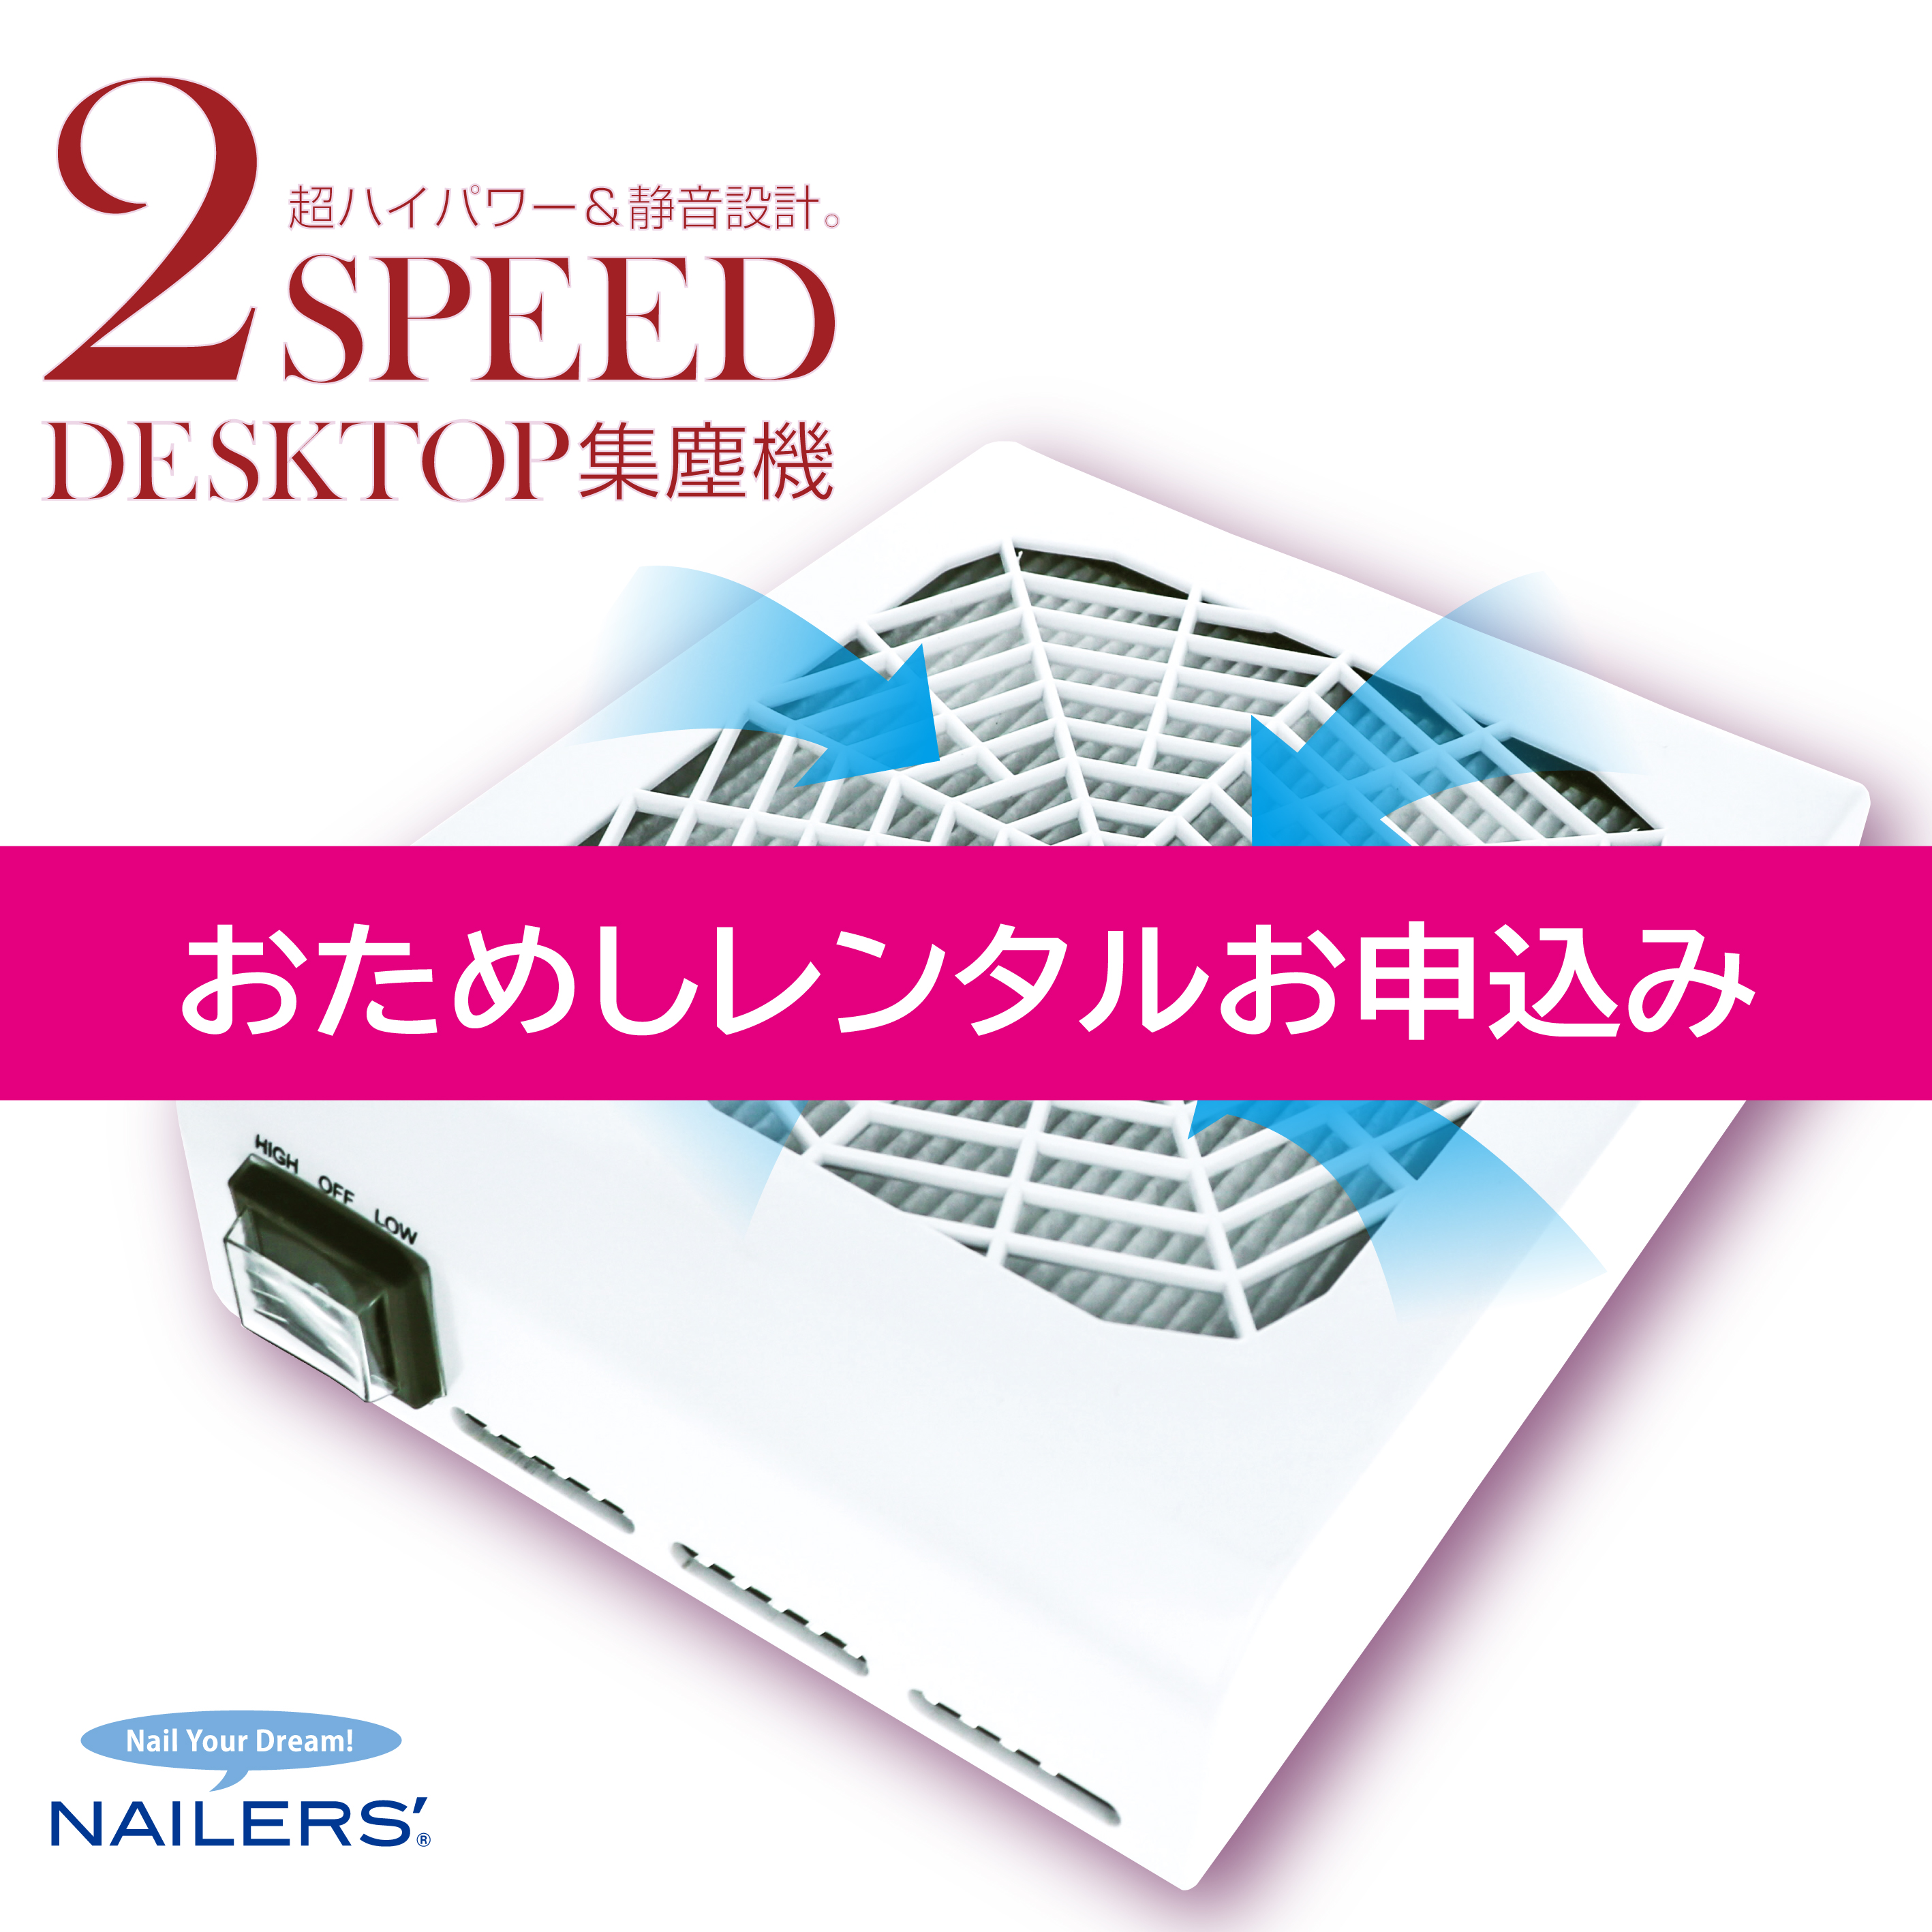 商品サイズ2スピード デスクトップ集塵機（2DT-1）